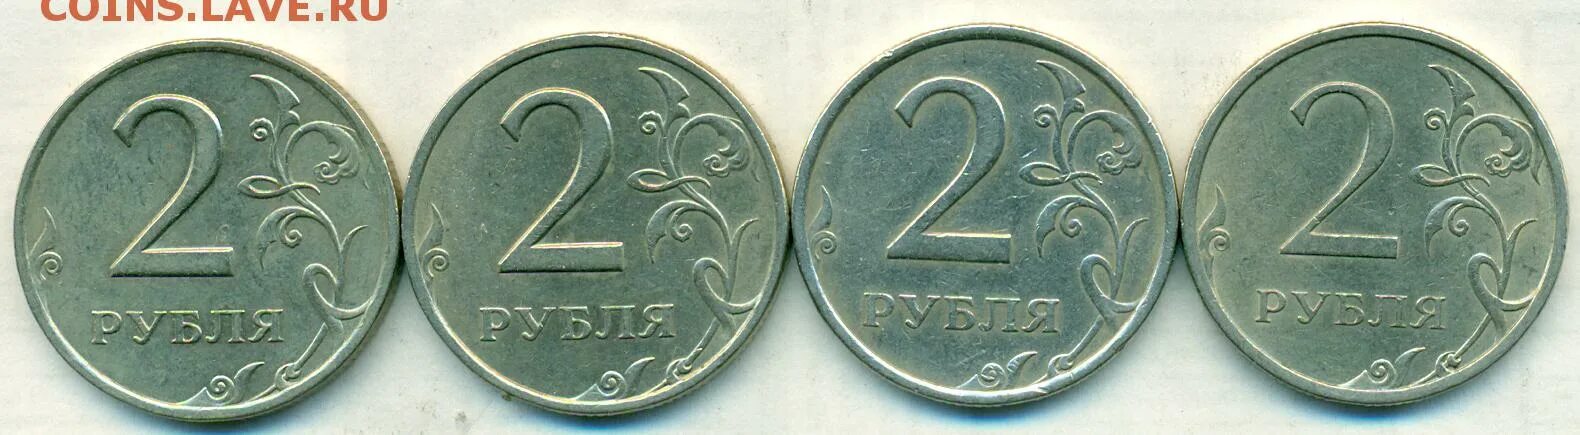 13 6 в рублях. 2 Рубля 2007 ММД. 2 Рубля банк России 2013. 2,4 Руб+1,6 руб. 2 Рубля (4 мая 2000) Смоленск.